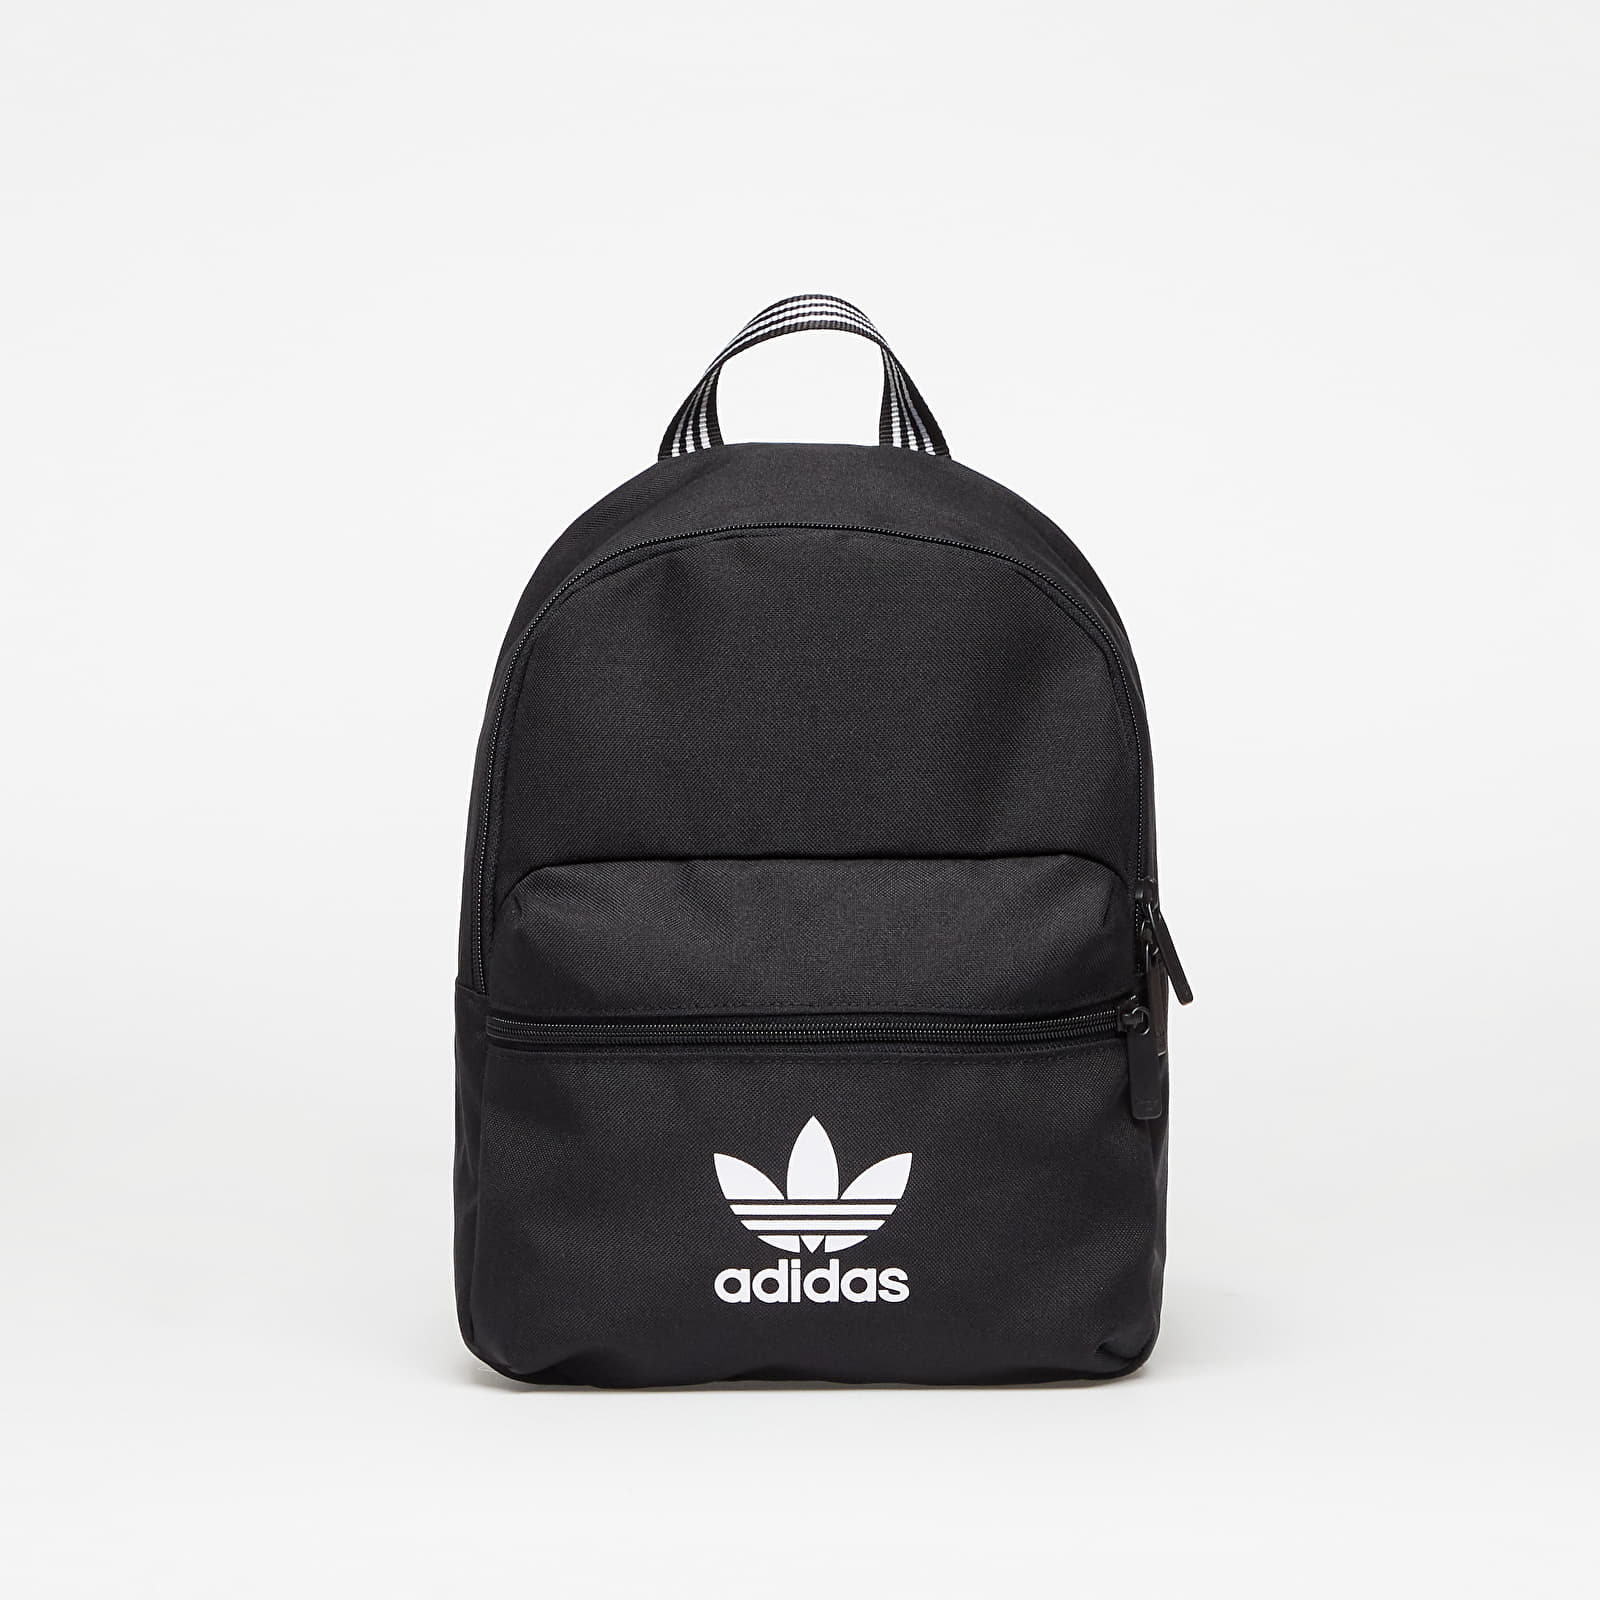 Accesorios adidas Originals Small Adicol Backpack Black